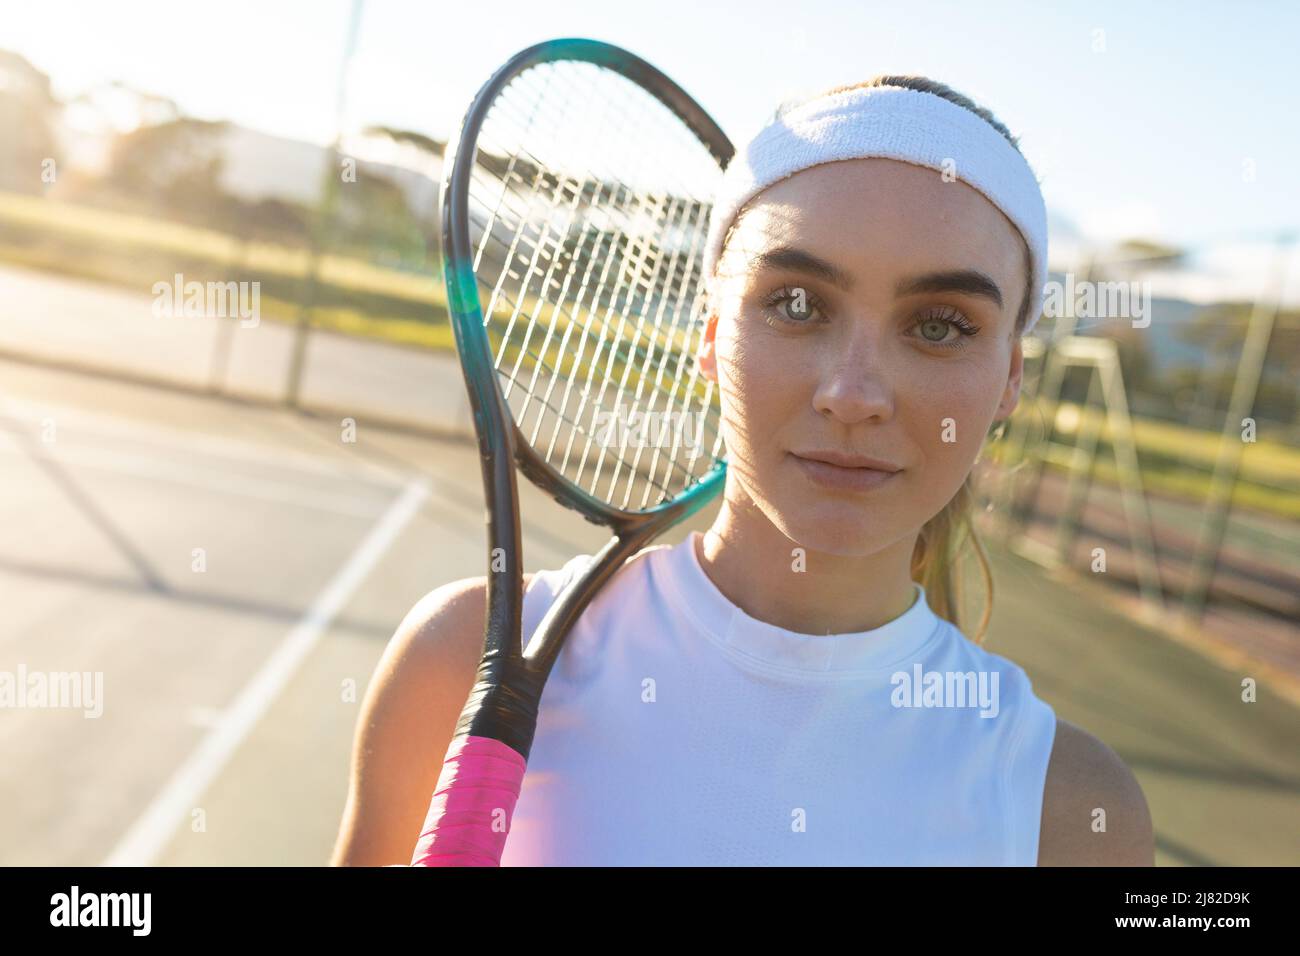 Porträt einer schönen jungen kaukasischen Tennisspielerin mit Stirnband und Schlägerplatz Stockfoto